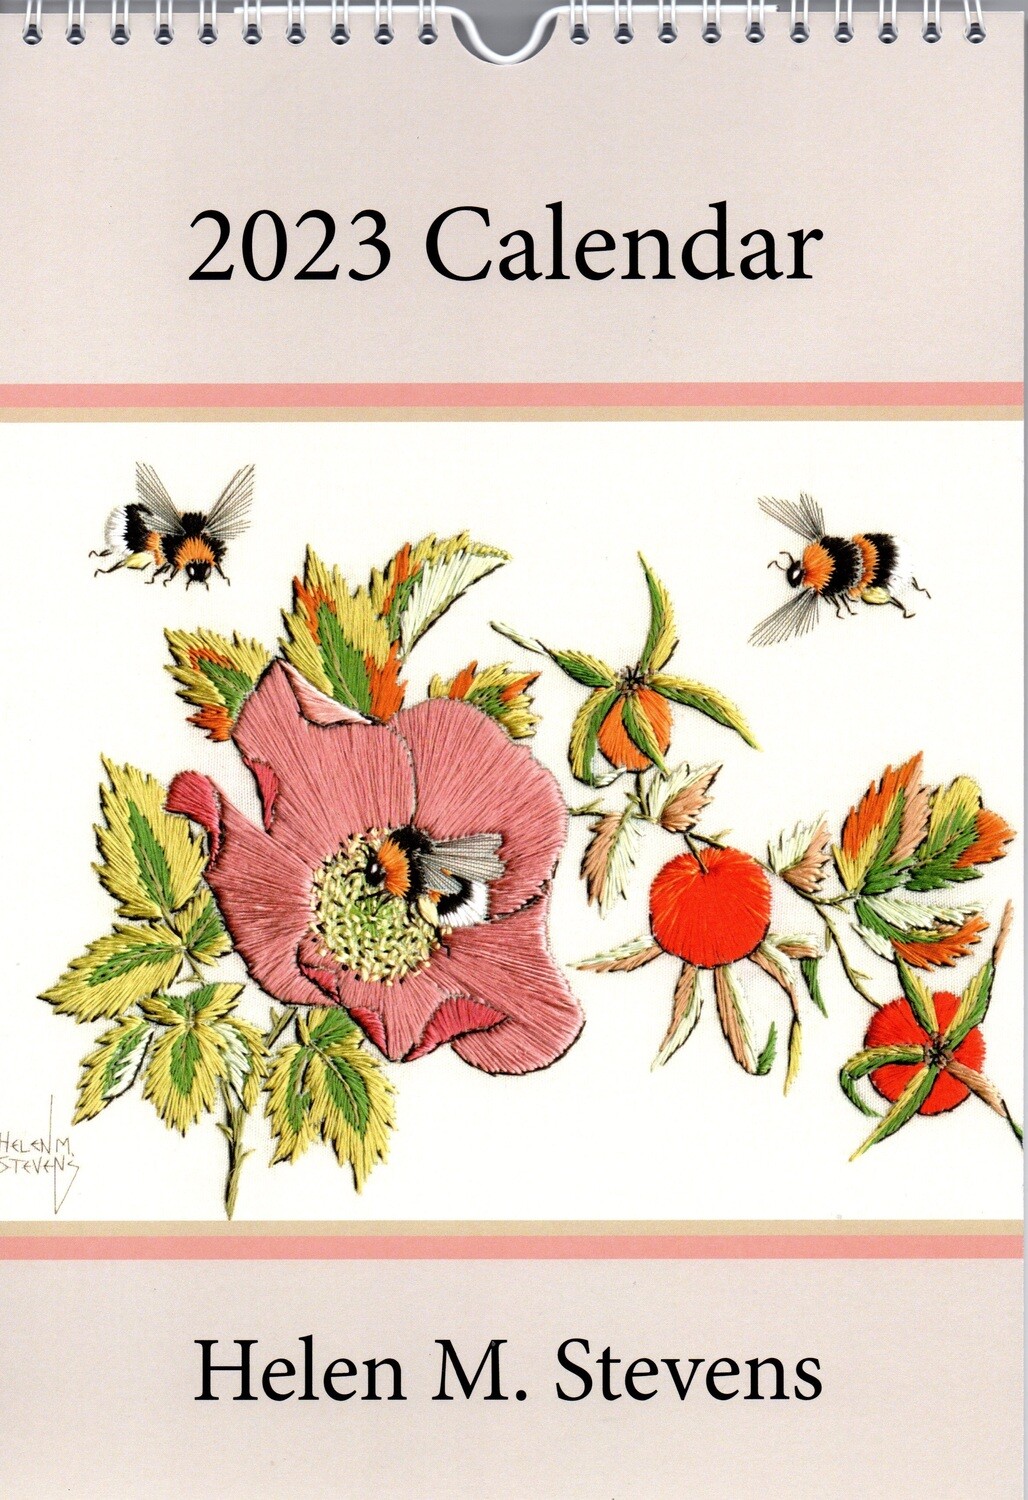 Helen M. Stevens' 2023 Calendar